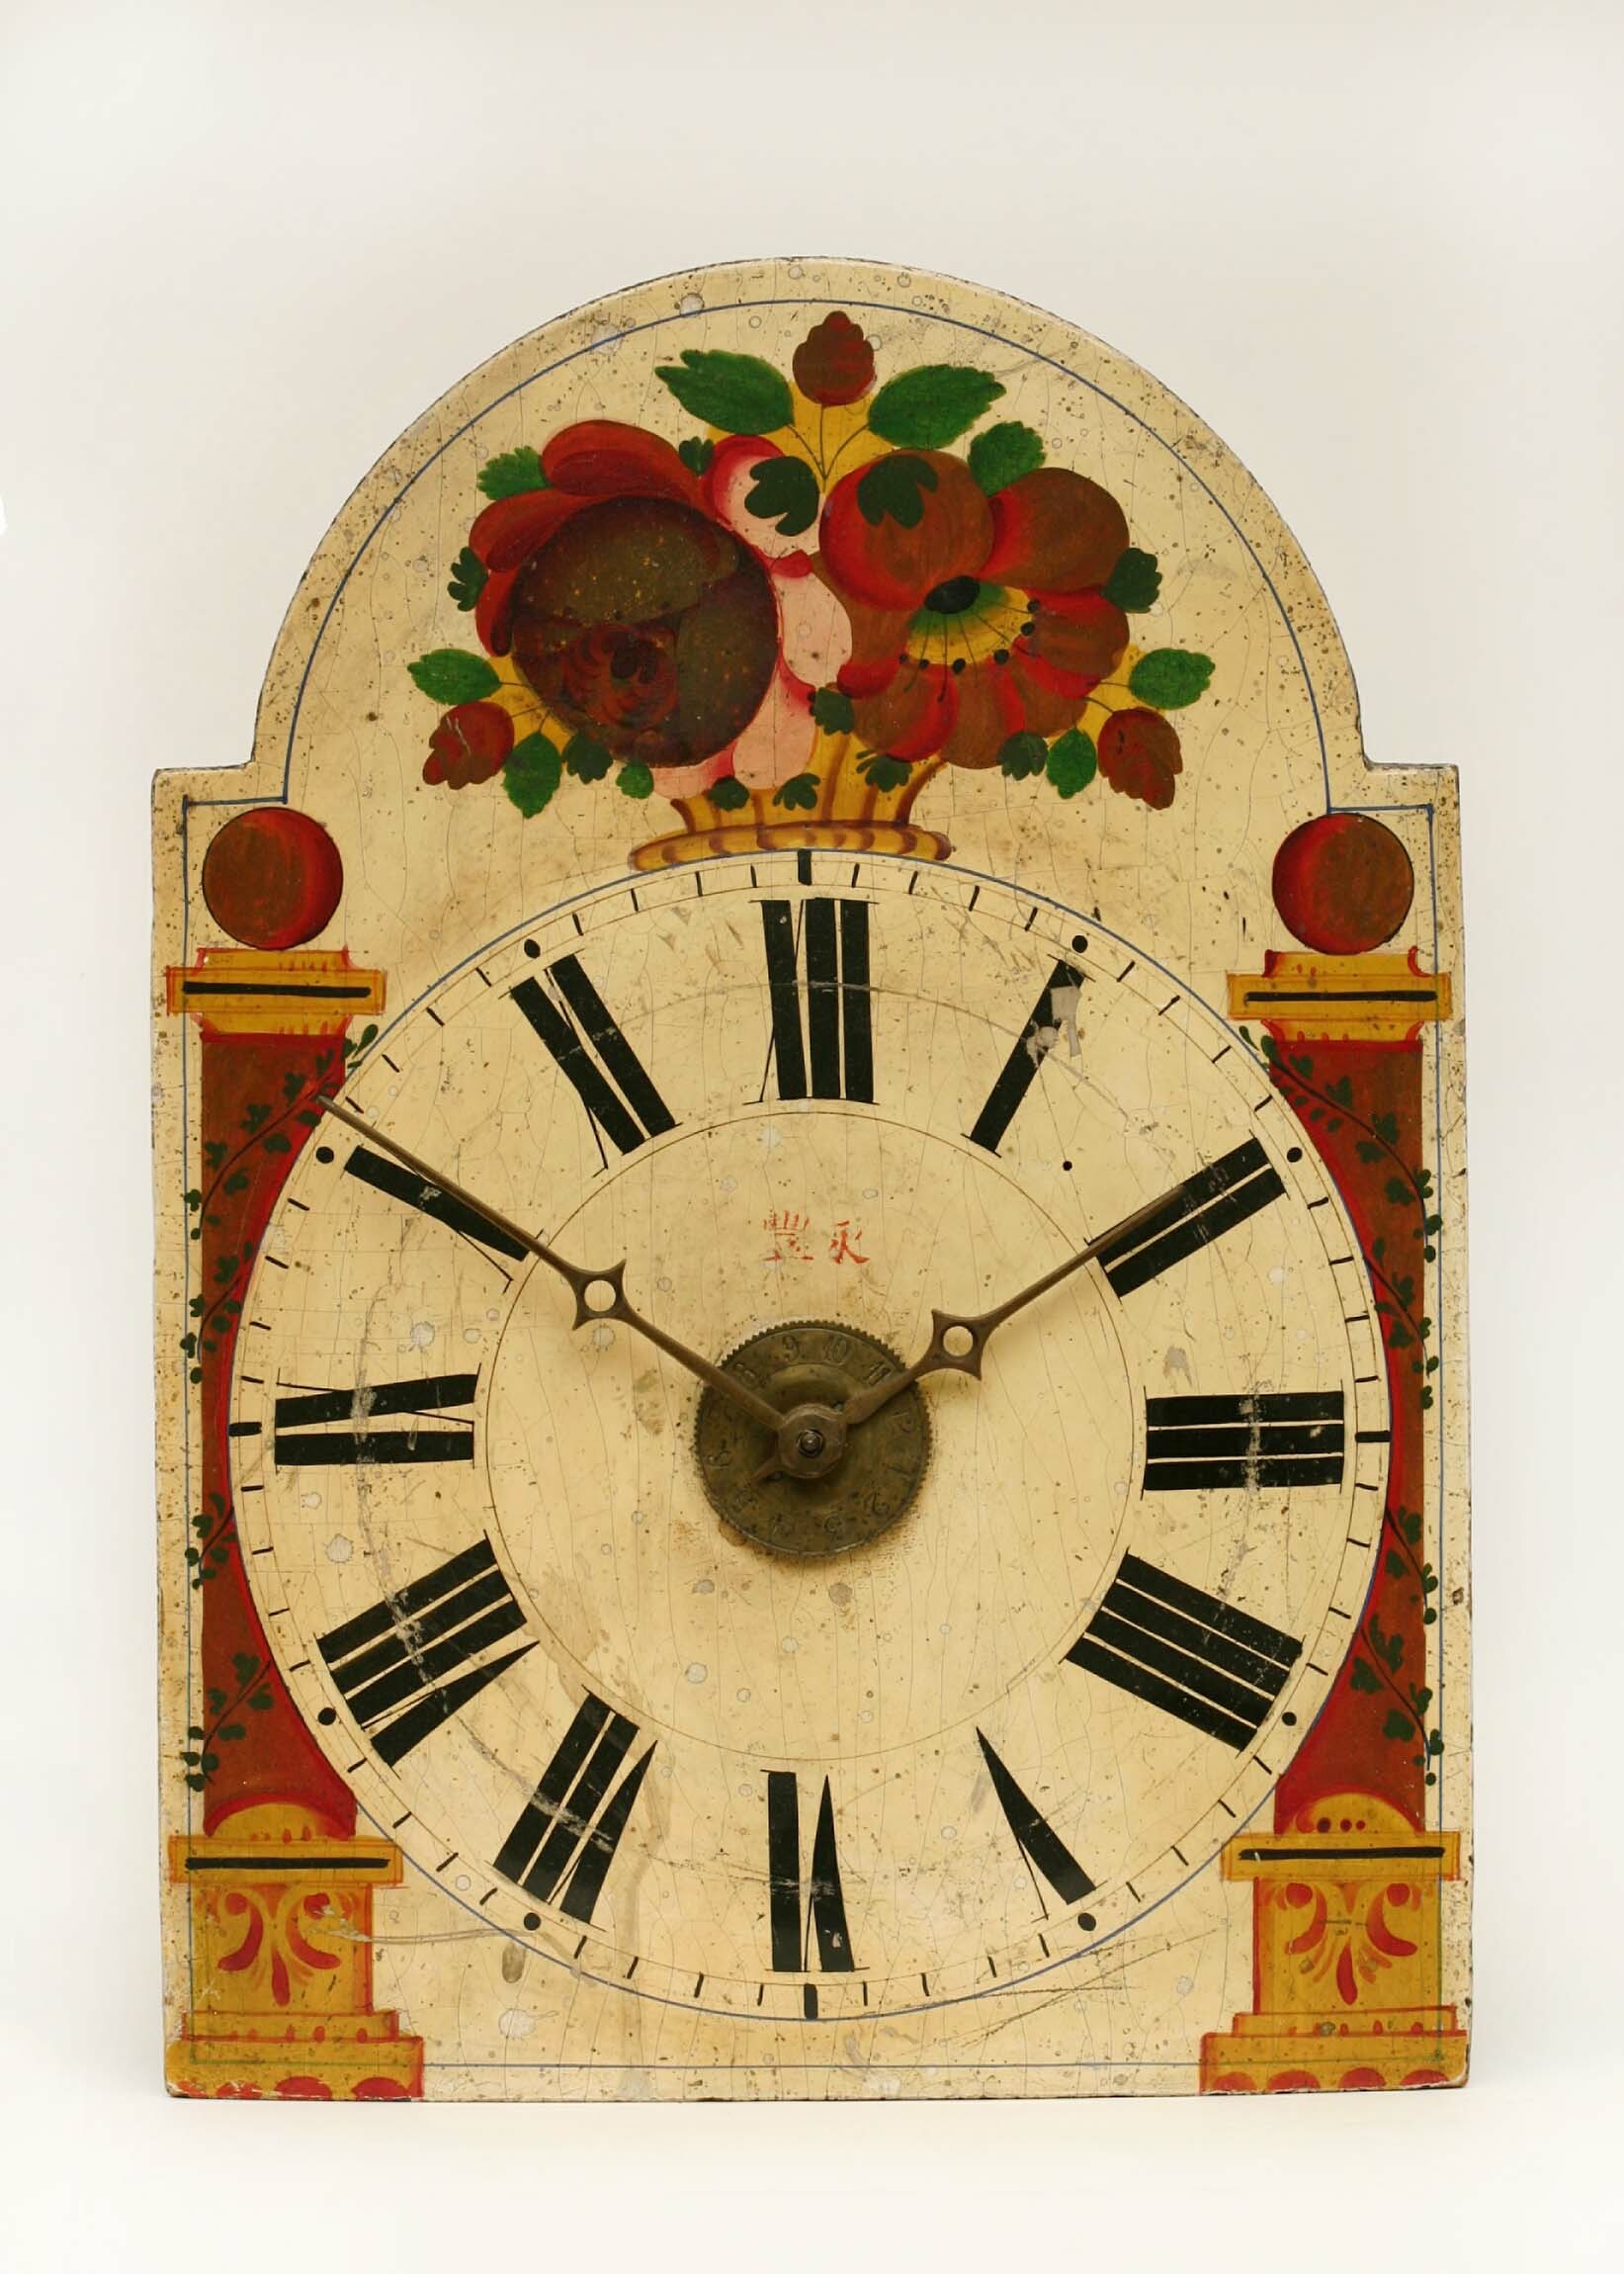 Lackschilduhr, Schwarzwald, um 1840 (Deutsches Uhrenmuseum CC BY-SA)